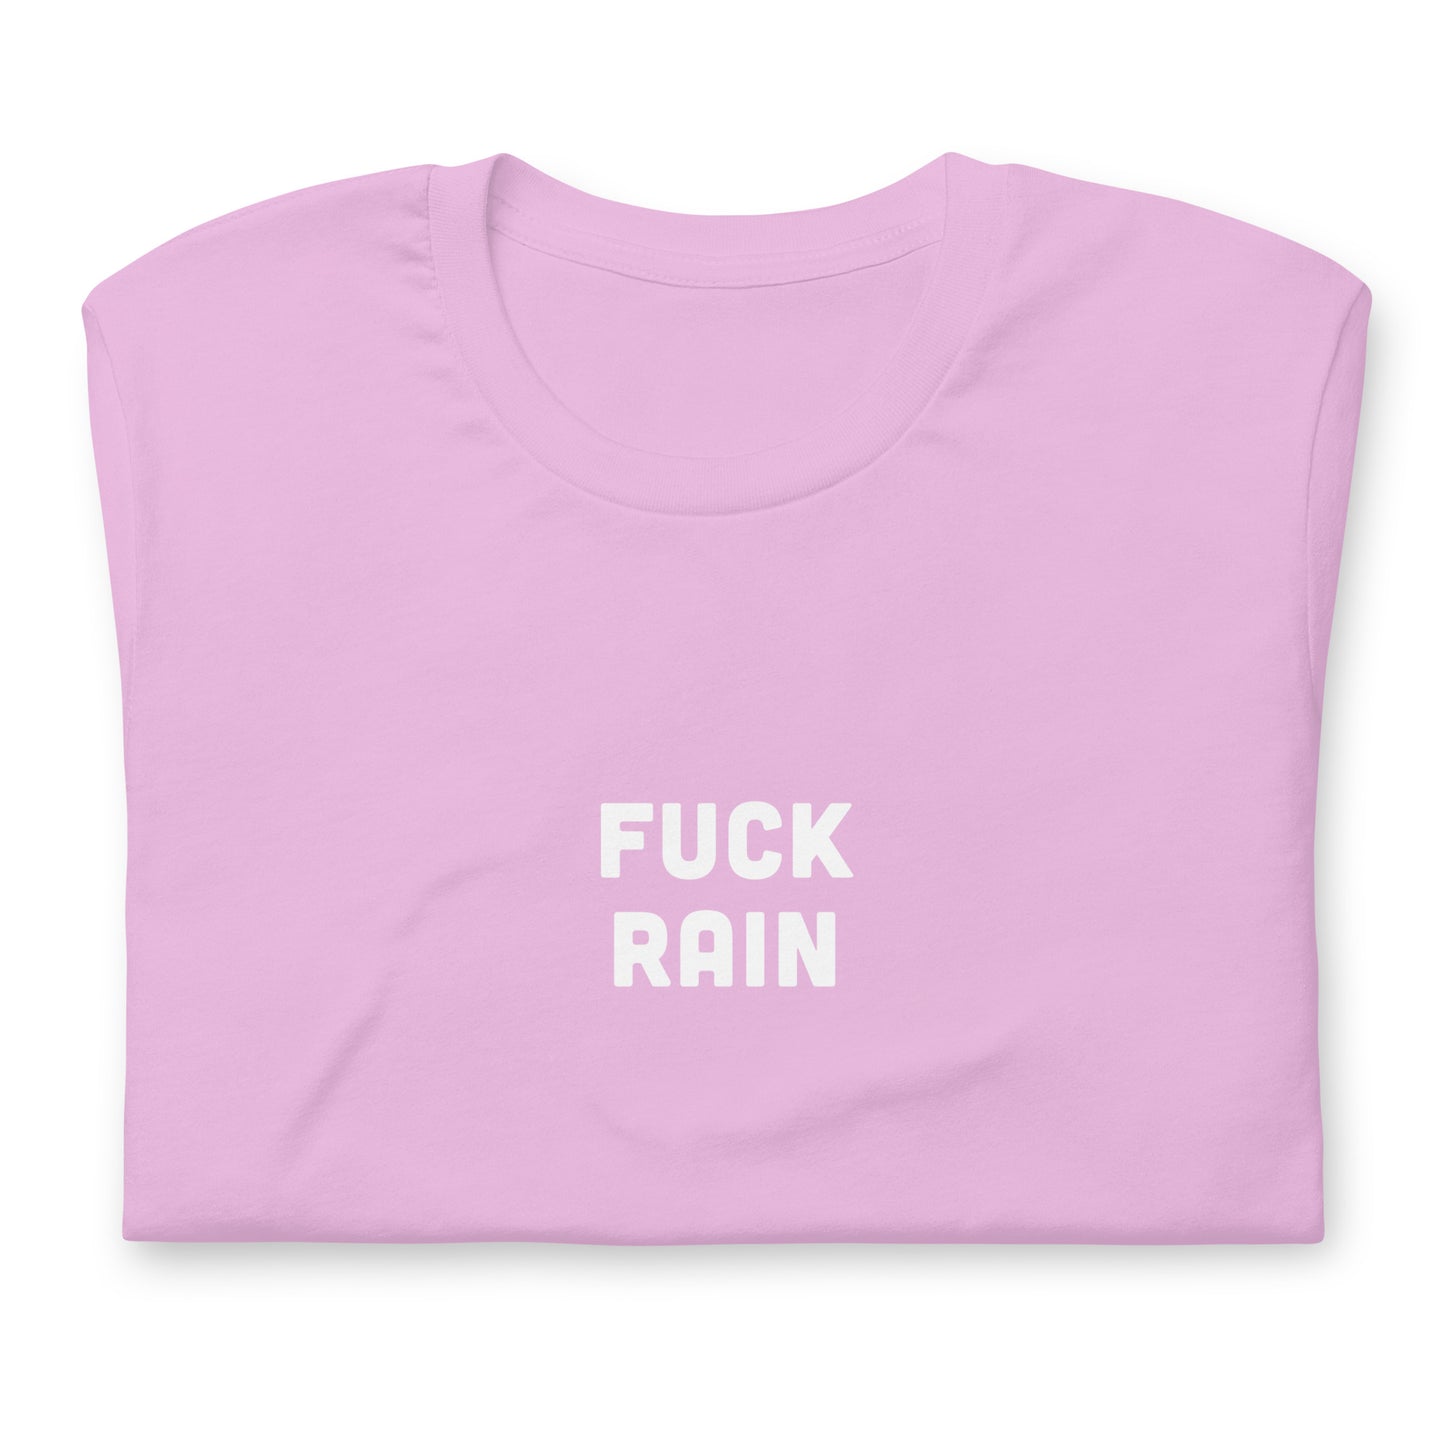 Fuck Rain T-Shirt Size 2XL Color Forest